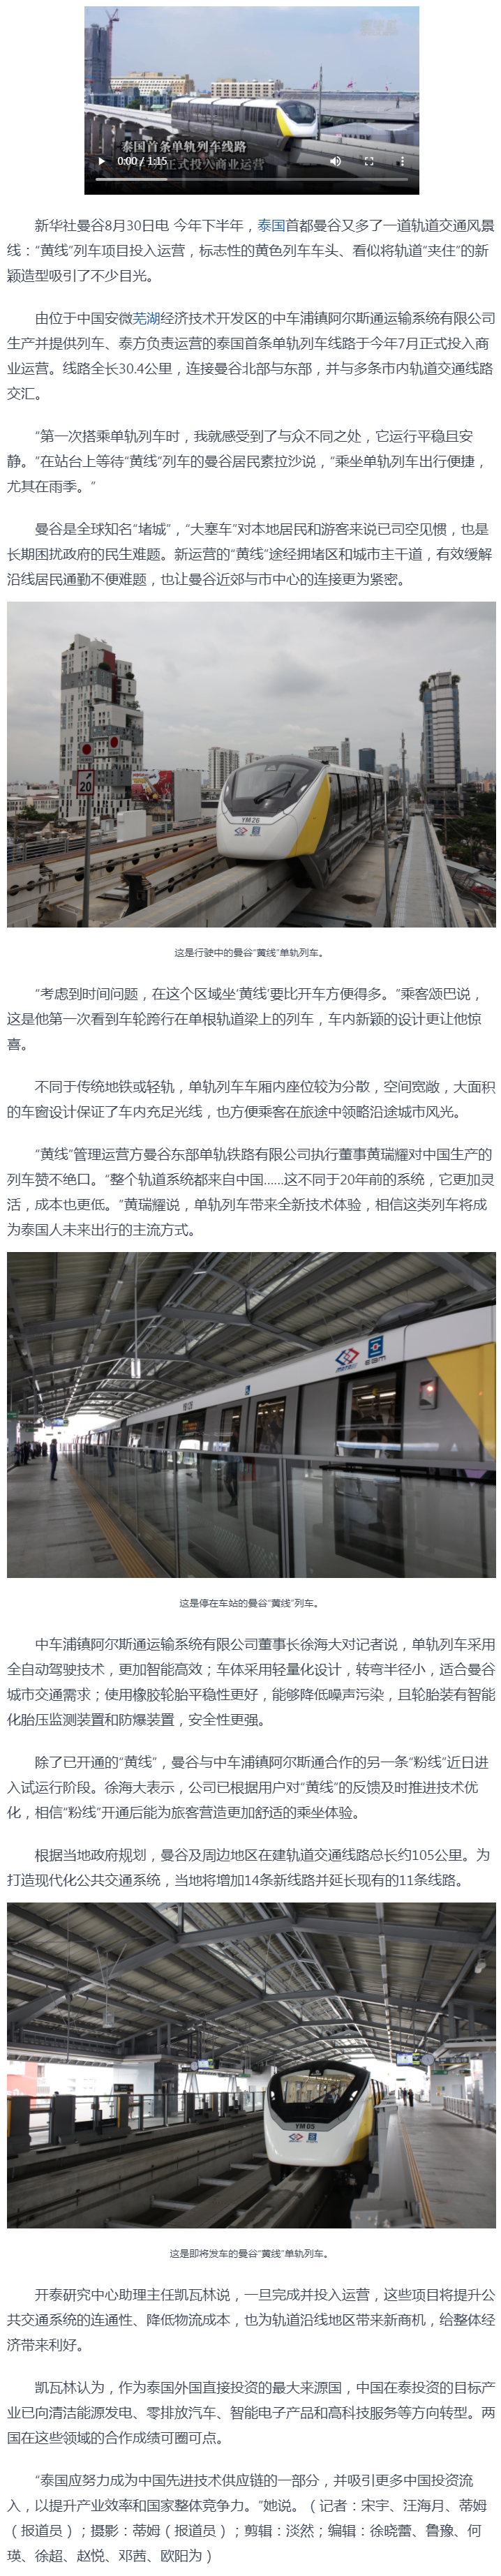 中泰合作建设的单轨列车助力打造曼谷城市风景线-新华丝路_看图王.png